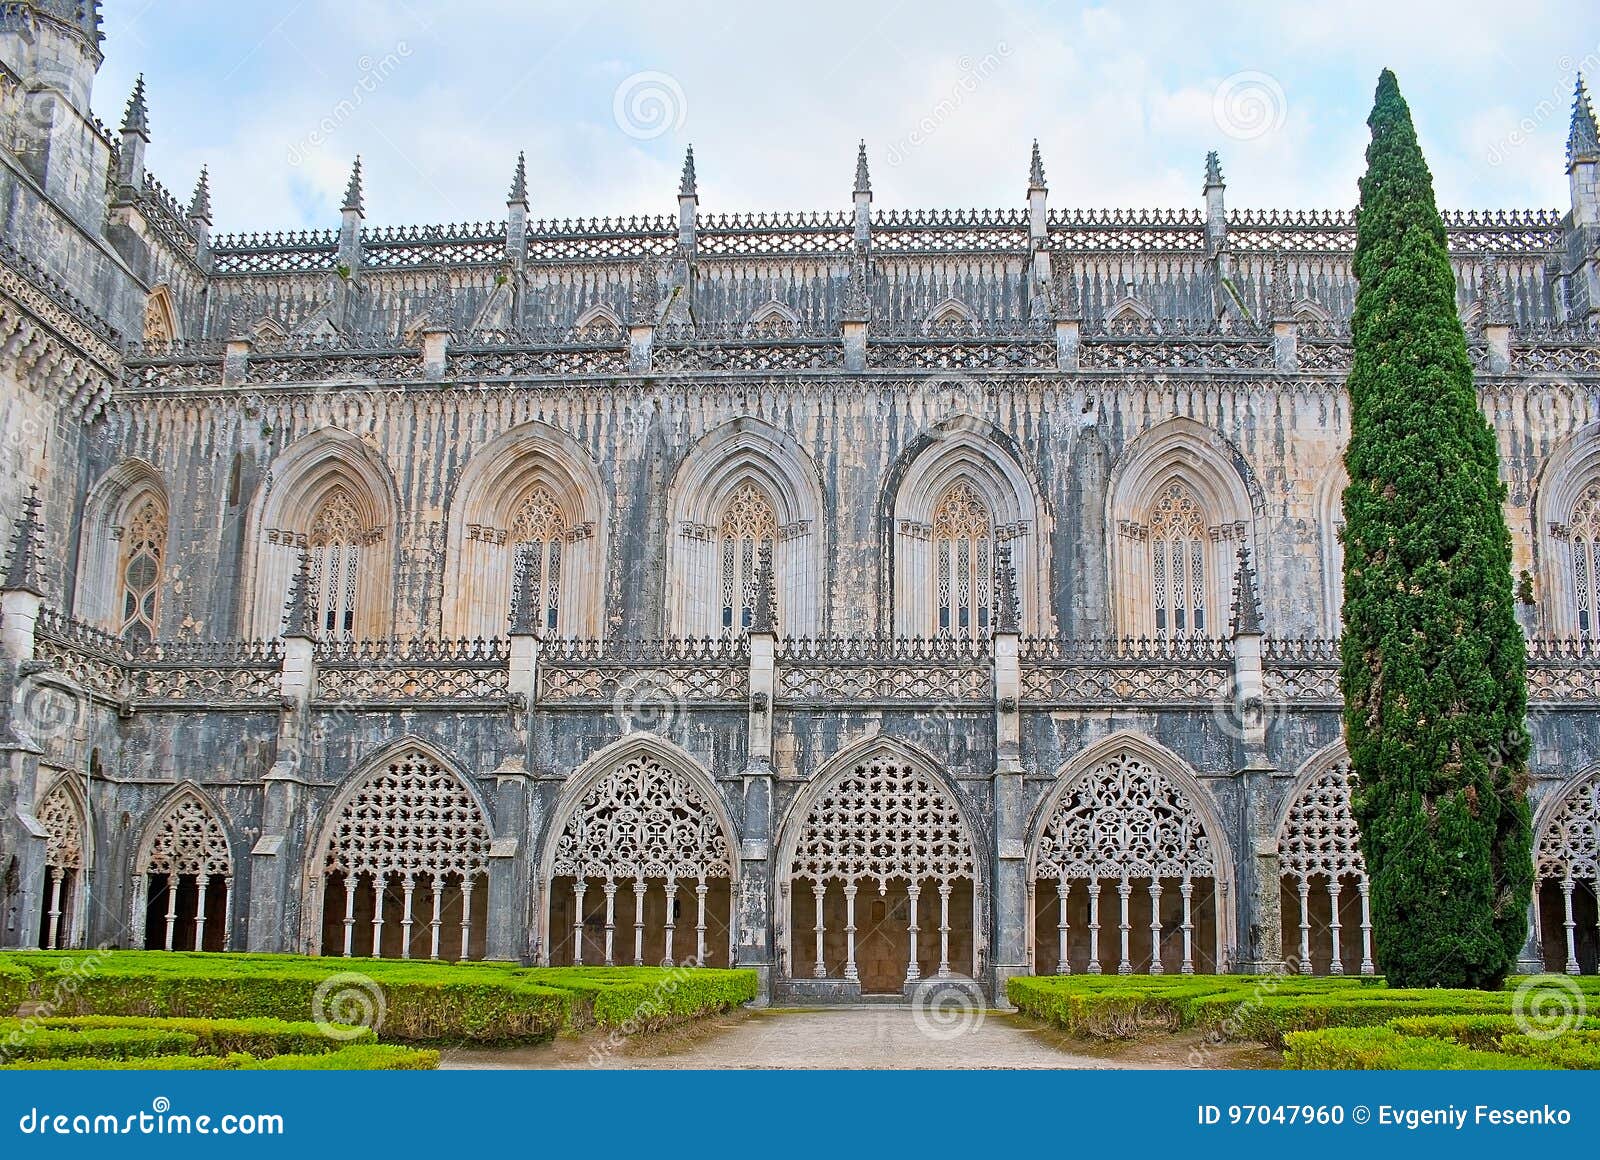 葡萄牙巴塔利亚修道院 库存照片. 图片 包括有 地标, 哥特式, 葡萄牙, 基督教, 教堂, 外部, 大教堂 - 224877750